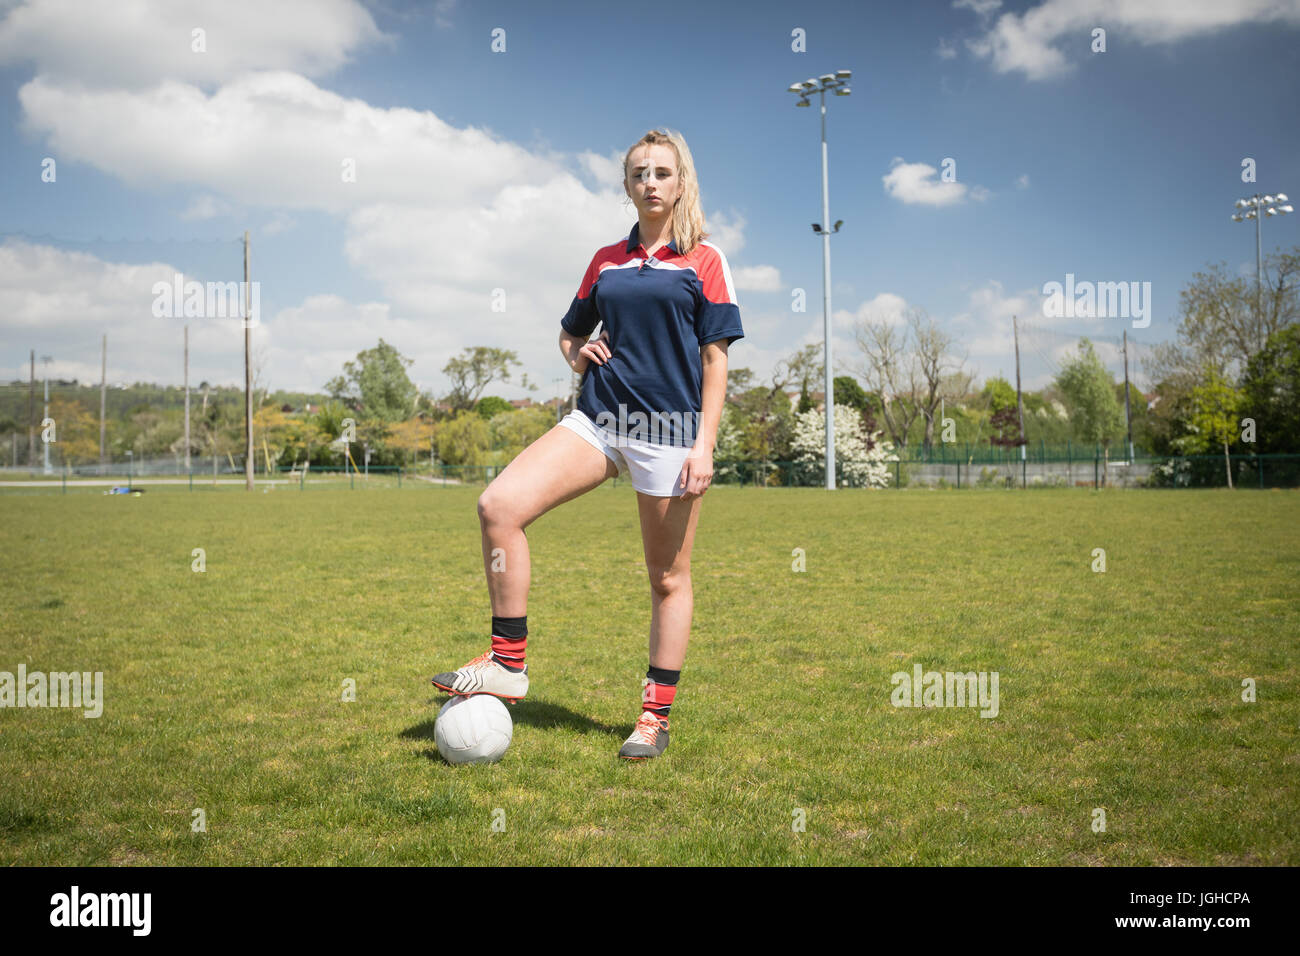 Toute la longueur du joueur avec ballon de soccer féminin sur terrain permanent contre le ciel Banque D'Images